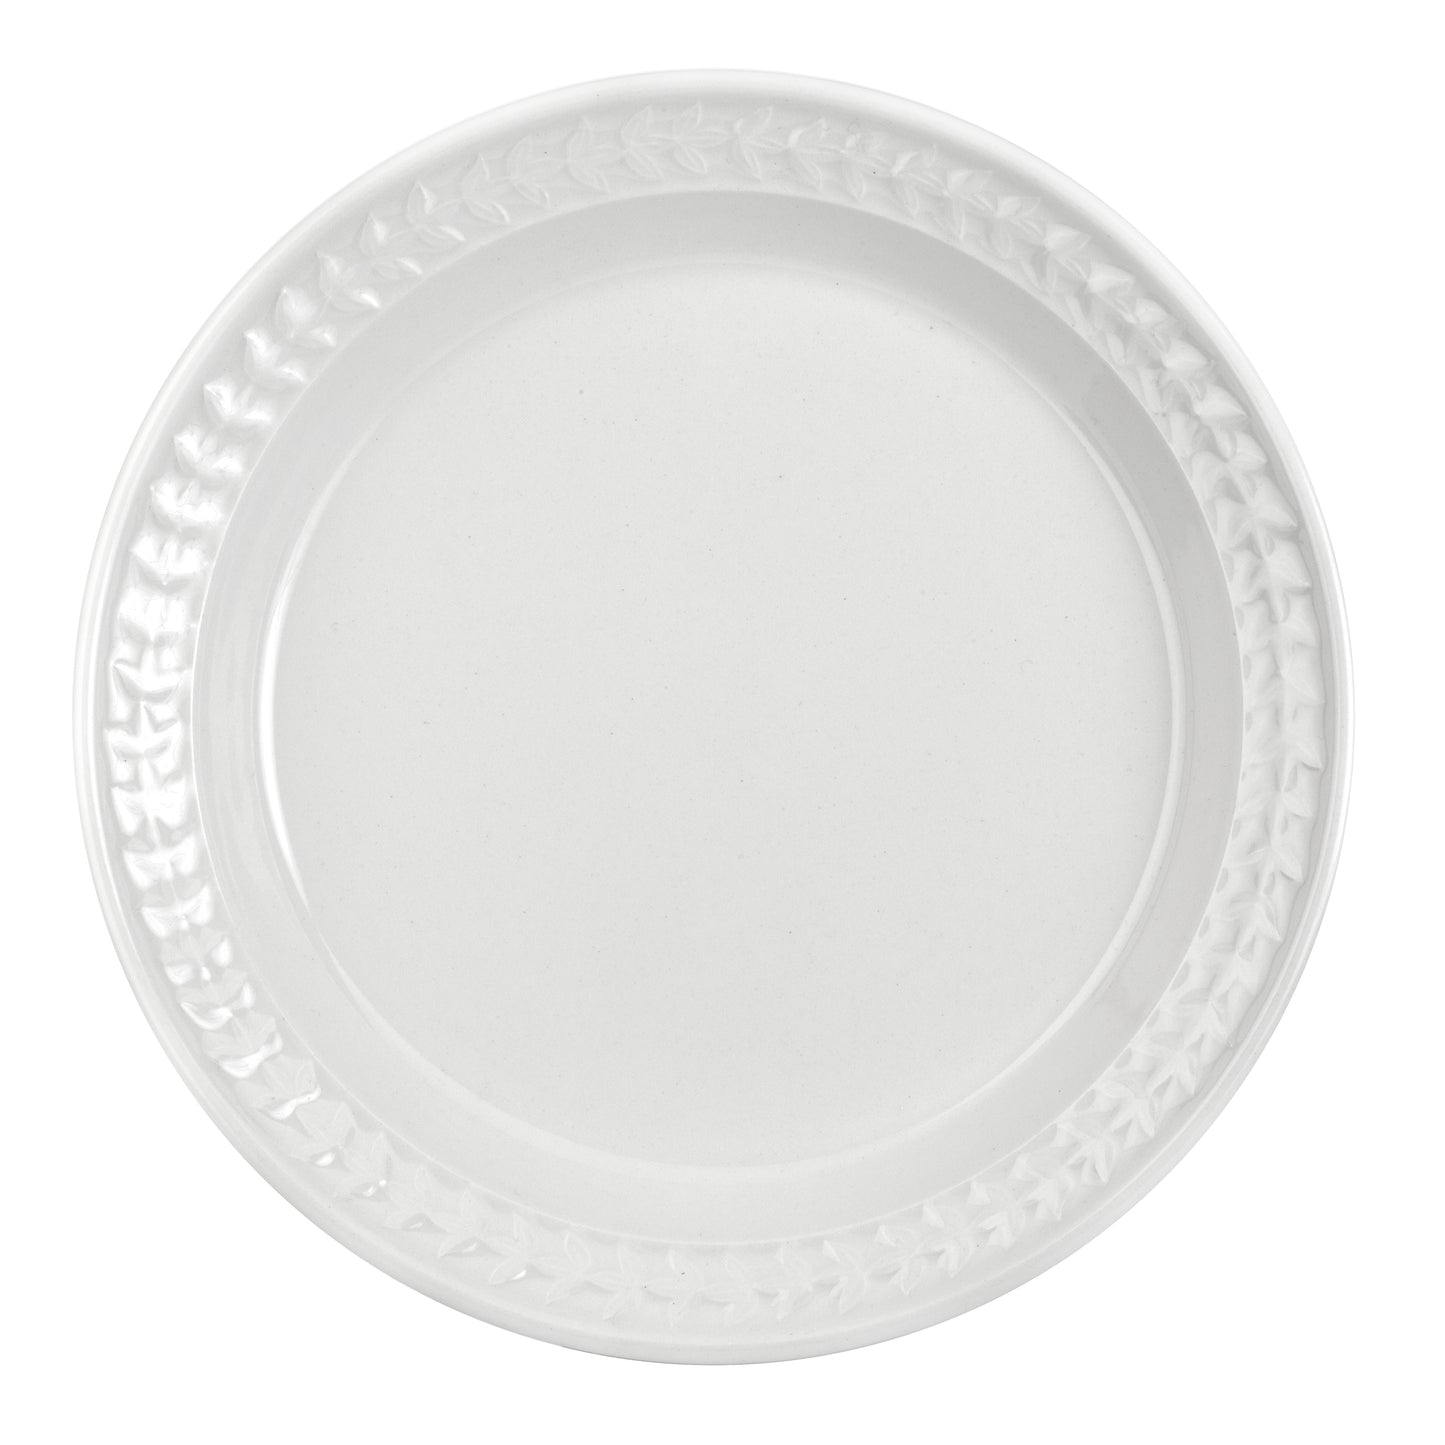 Dinner plate - White set of 2